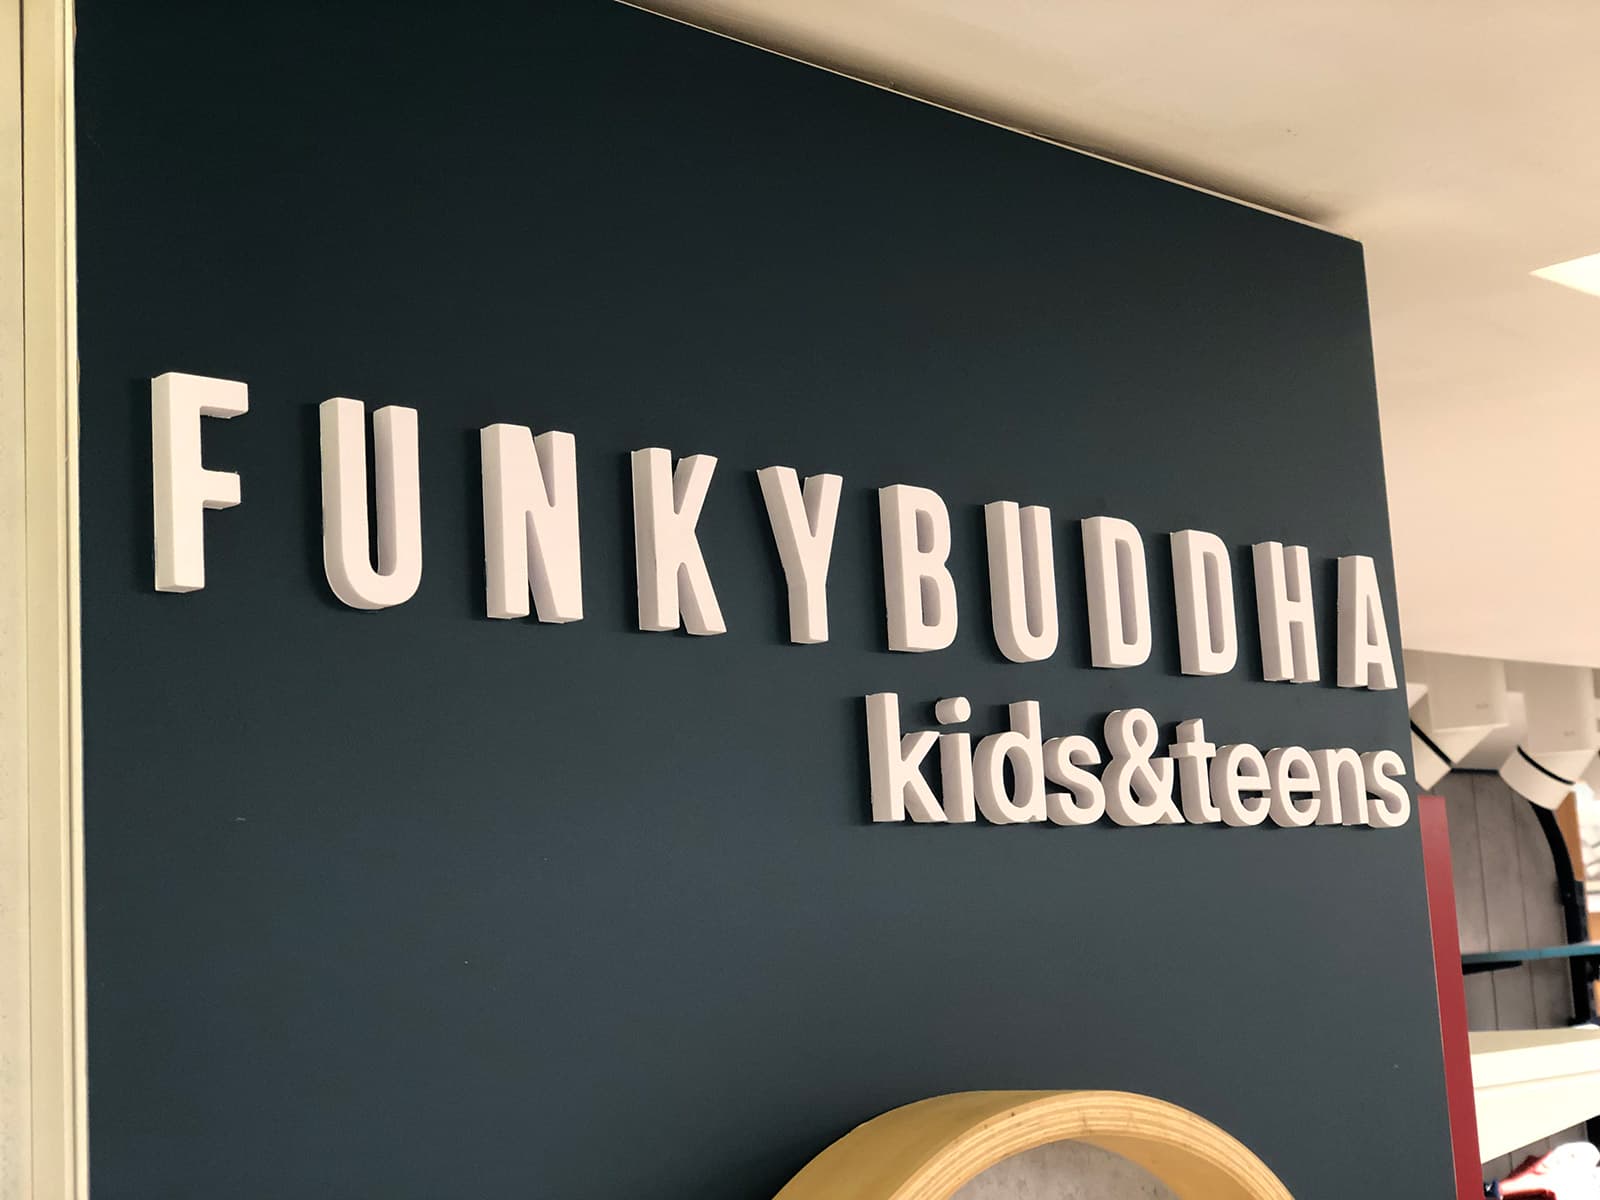 Εξοπλισμός και επίπλωση παιδικού καταστήματος, Funkybuddha kids & teens